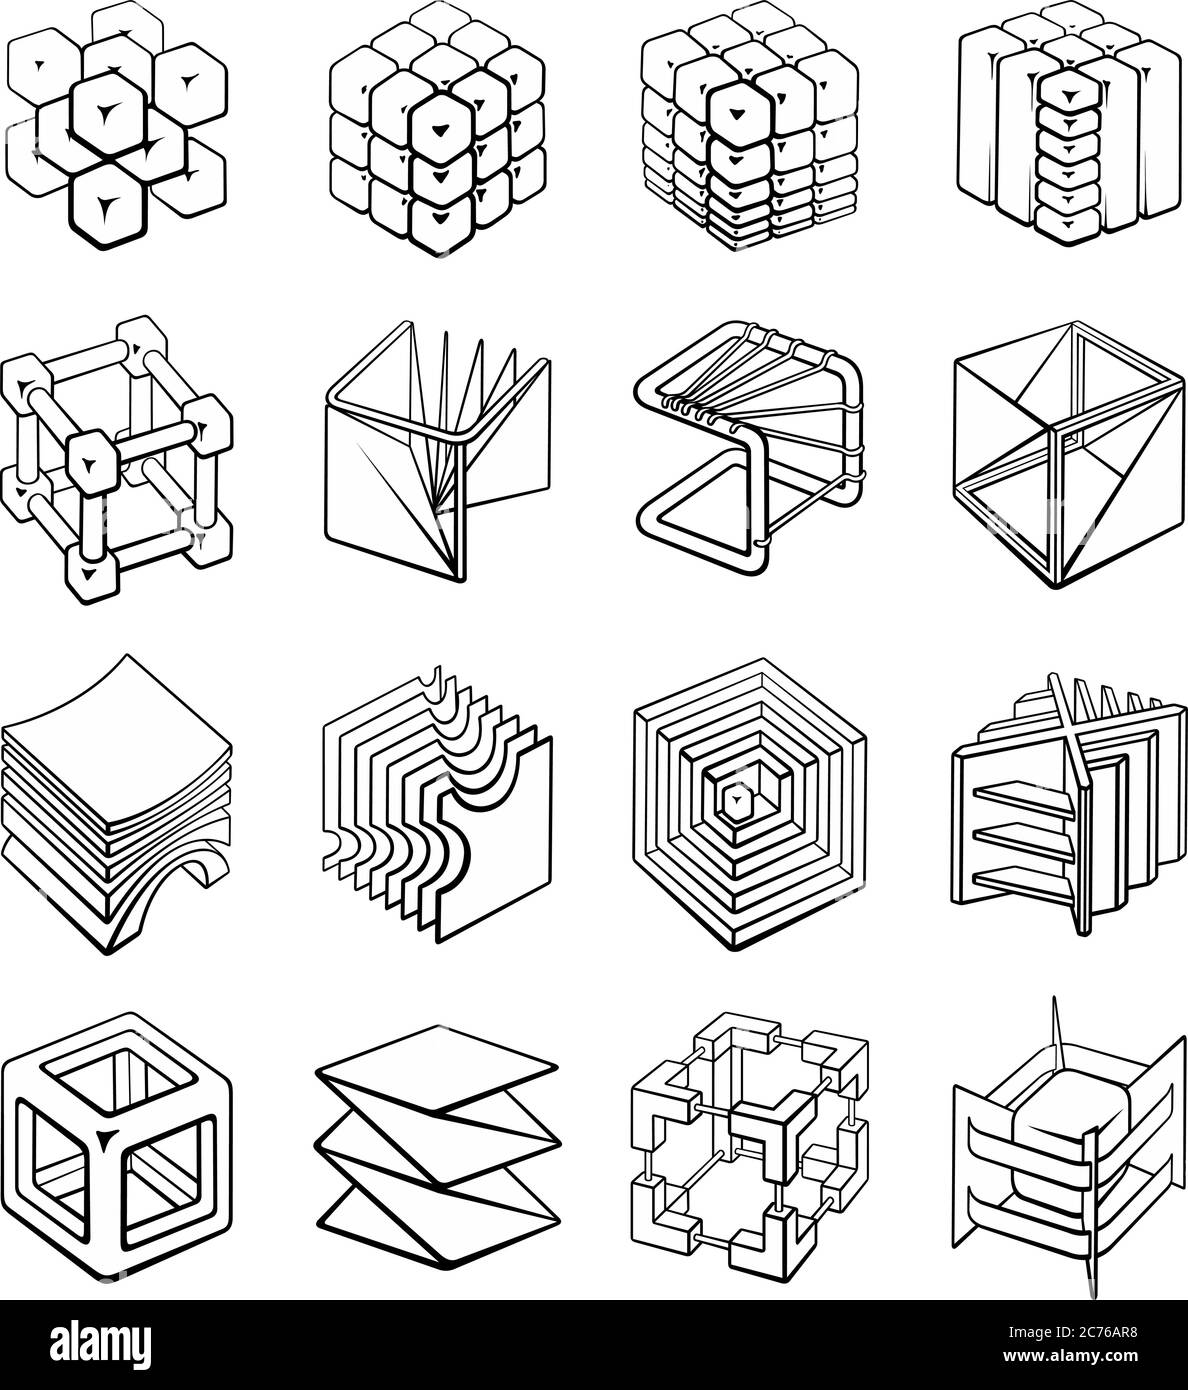 Conjunto de de cubos de formas geométricas en 3D Vector de - Alamy